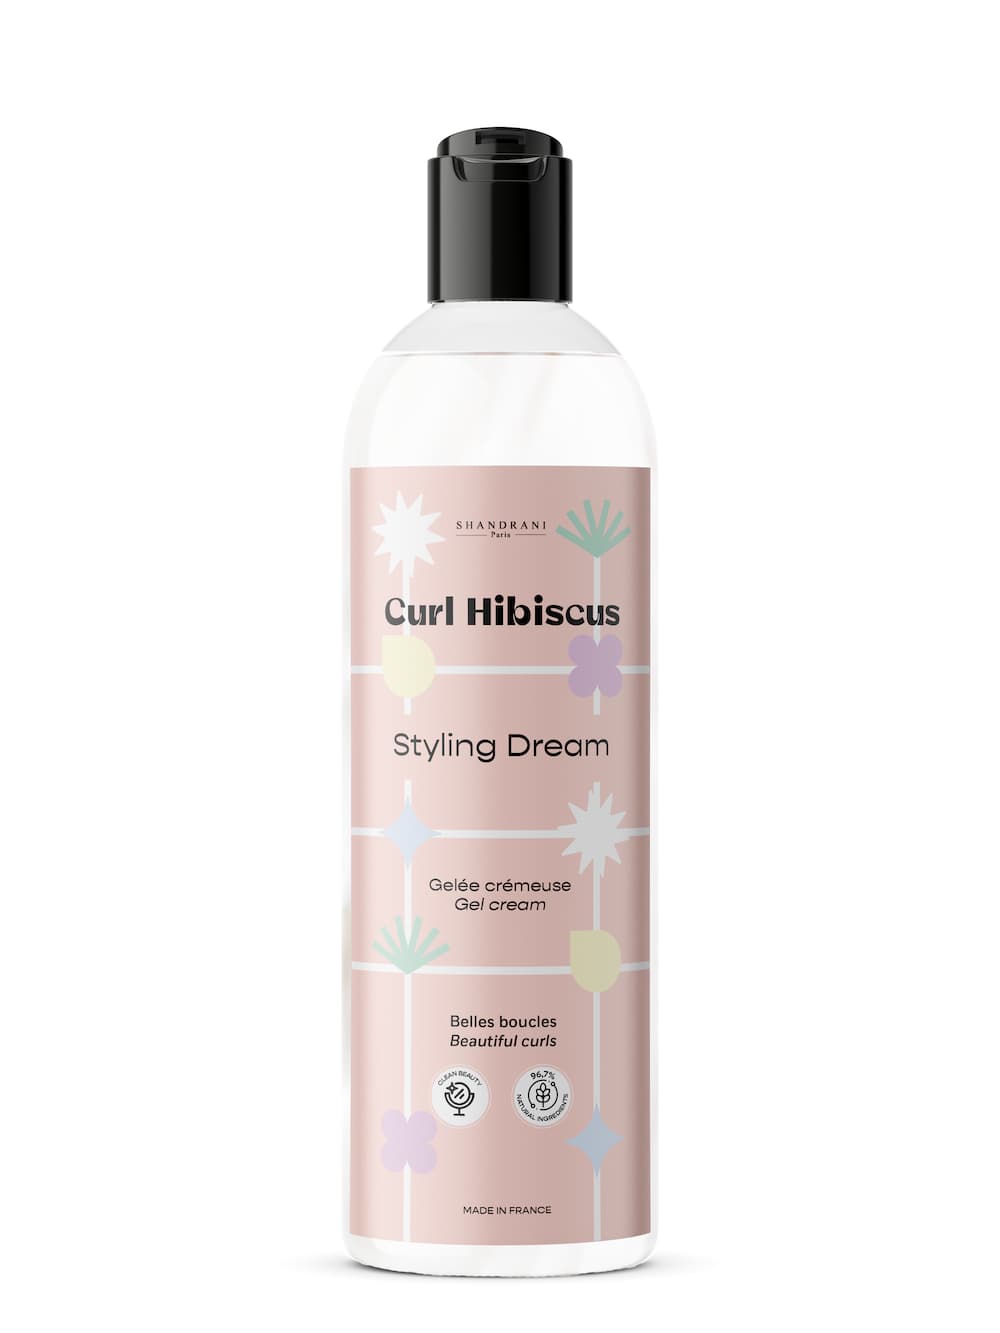 Les vertus de l'hibiscus pour les cheveux et la peau – Ethnilink